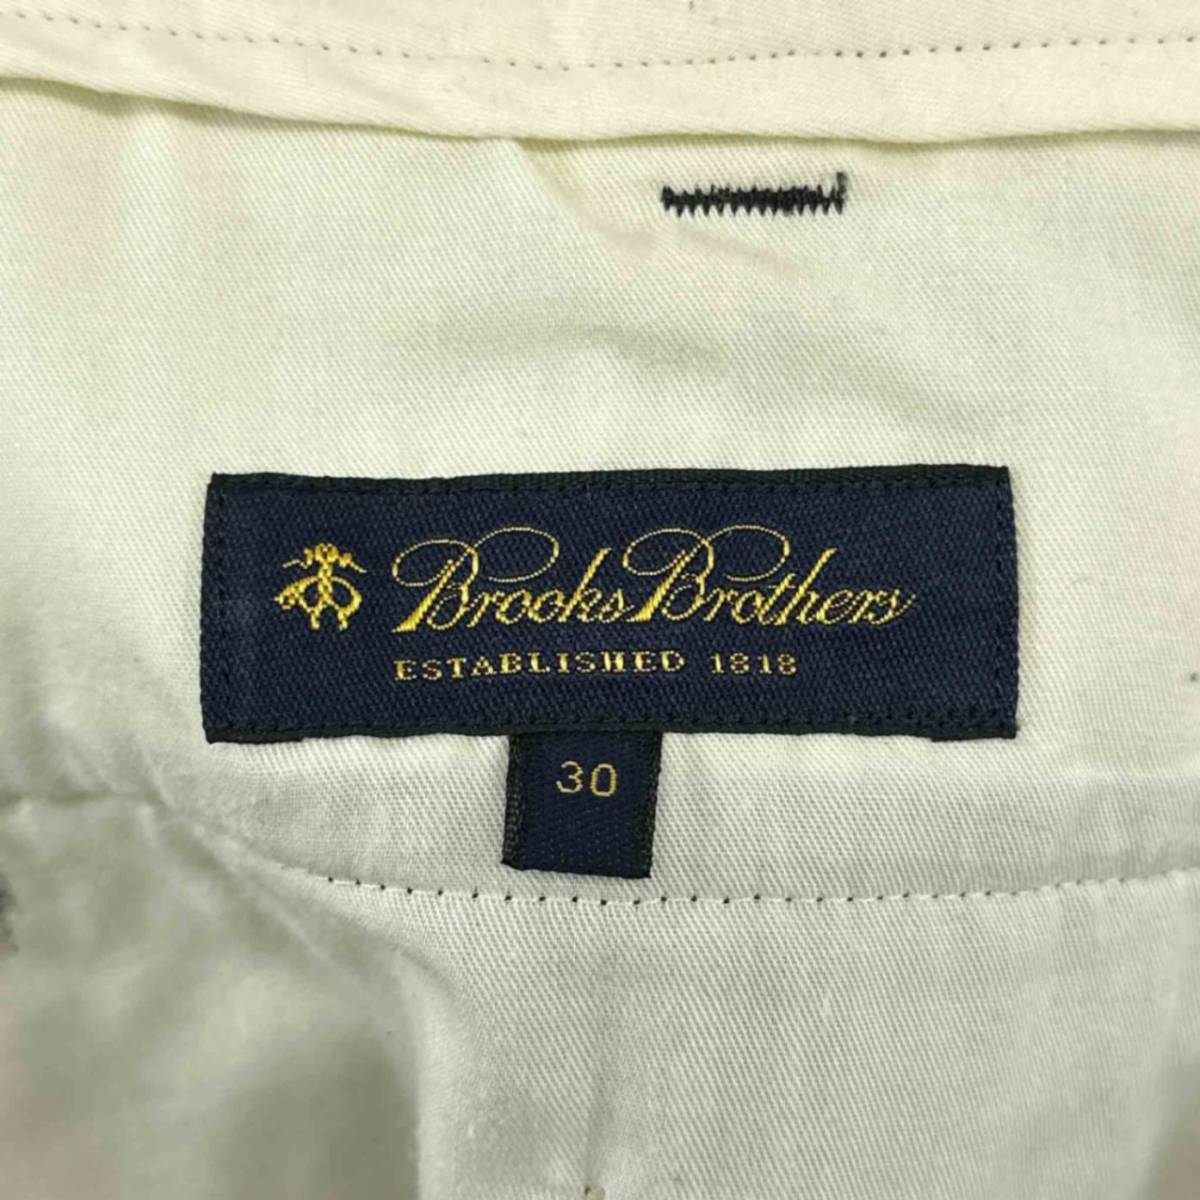 Brooks Brothers ブルックスブラザーズ スラックス ブラック サイズ30 無地 ボトムス メンズ ヴィンテージ 6_画像4